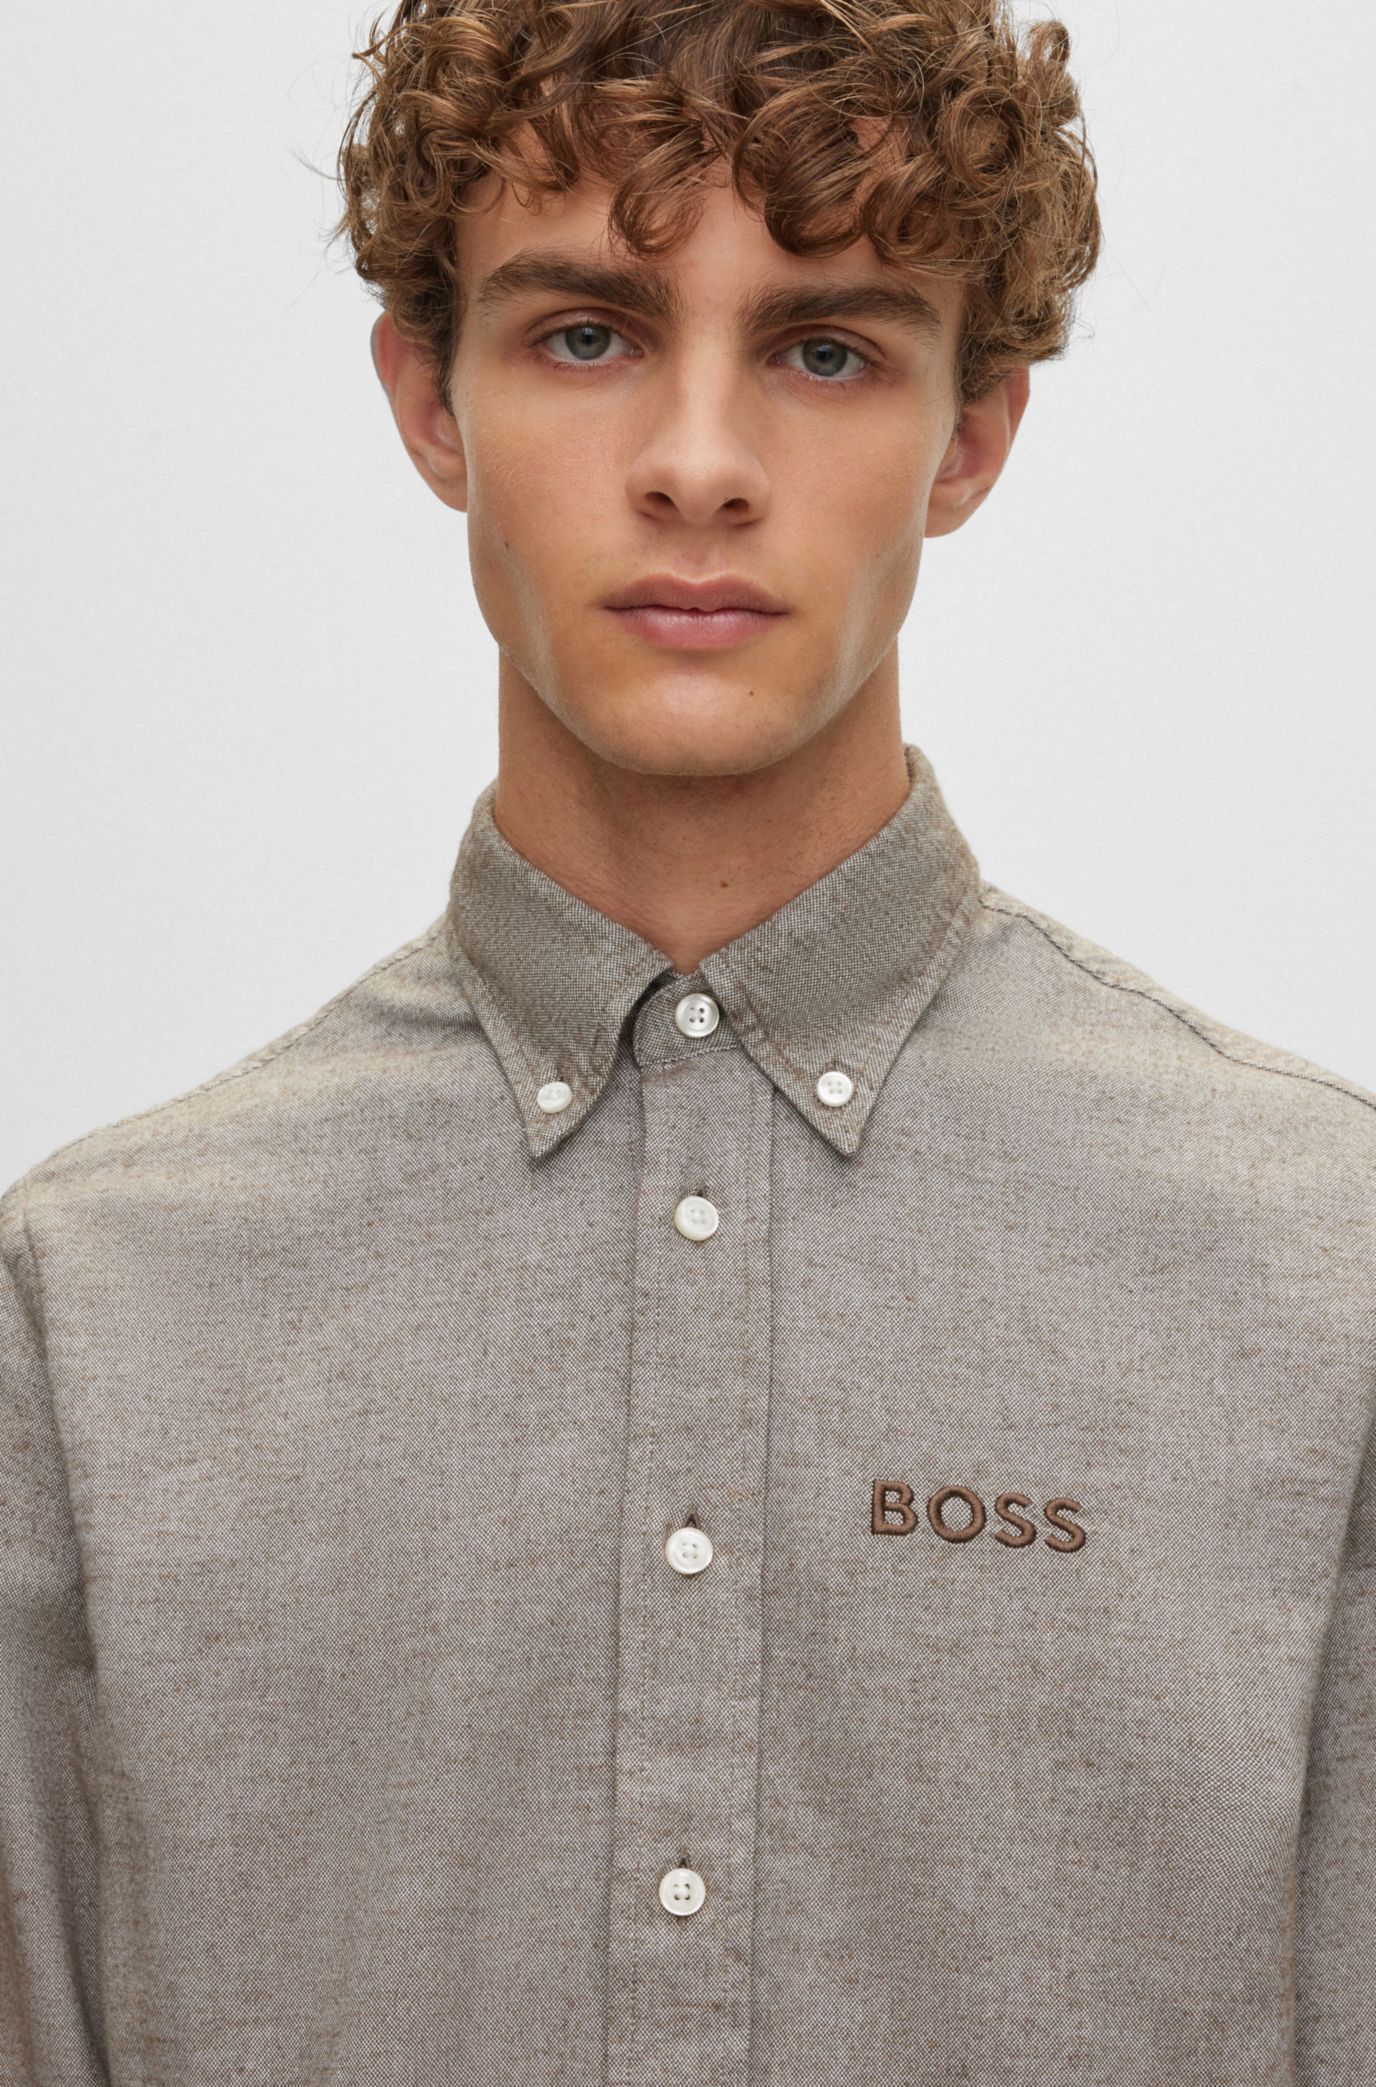 BOSS - コットンオックスフォード リラックスフィットシャツ ダブル ...